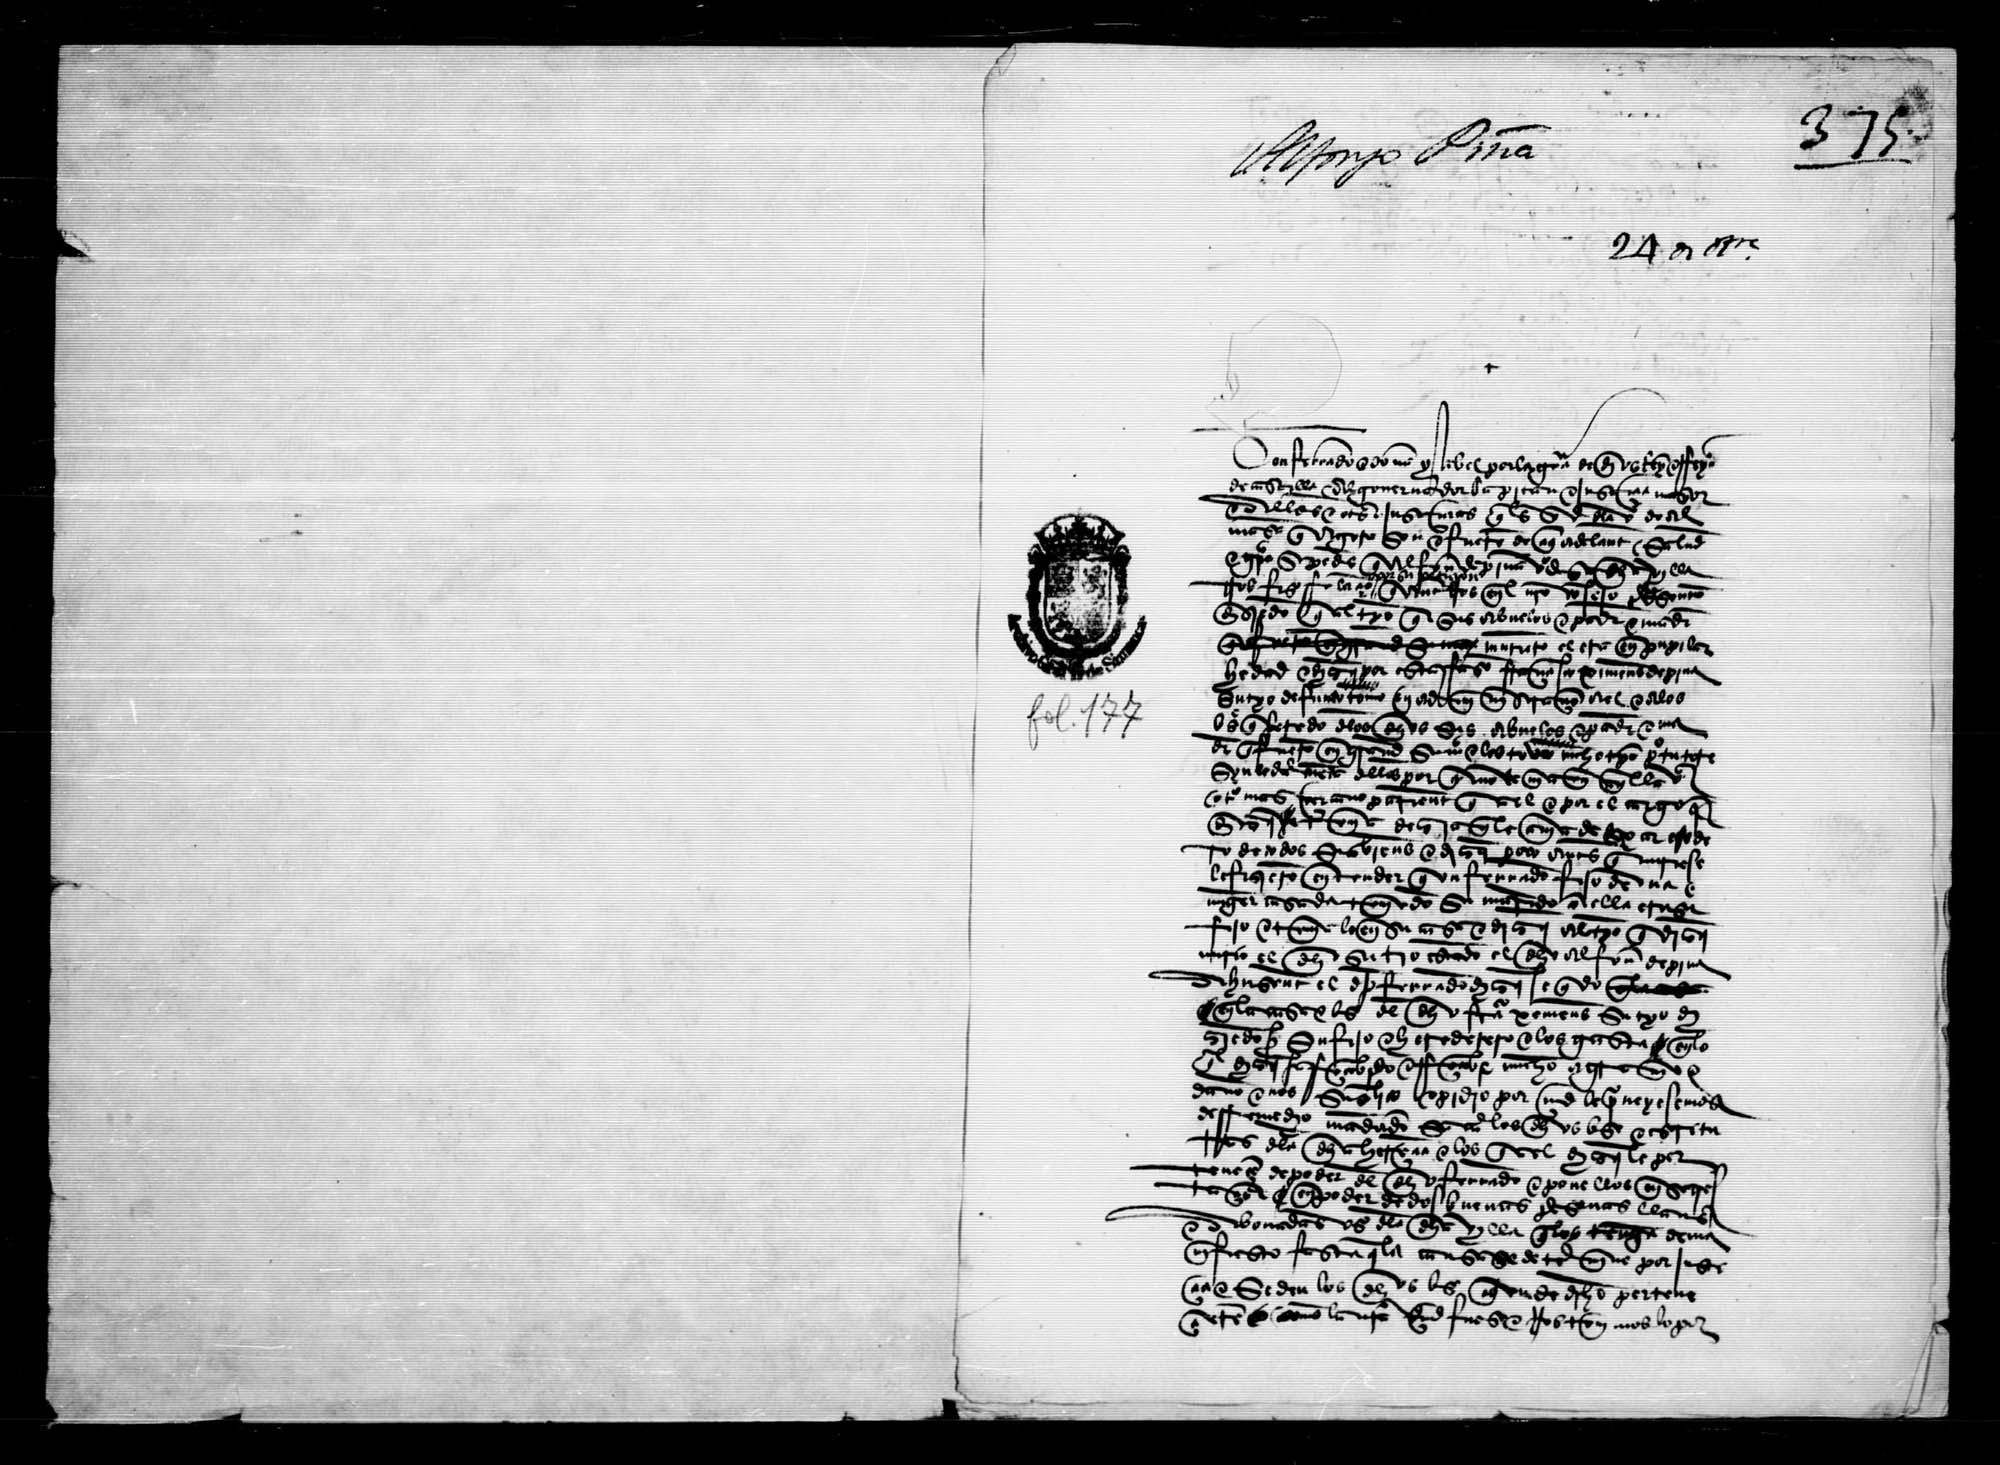 Petición de Alfonso de Piña, vecino de Almansa, para que se secuestren ciertos bienes que dice ser suyos y que le fueron tomados indebidamente.